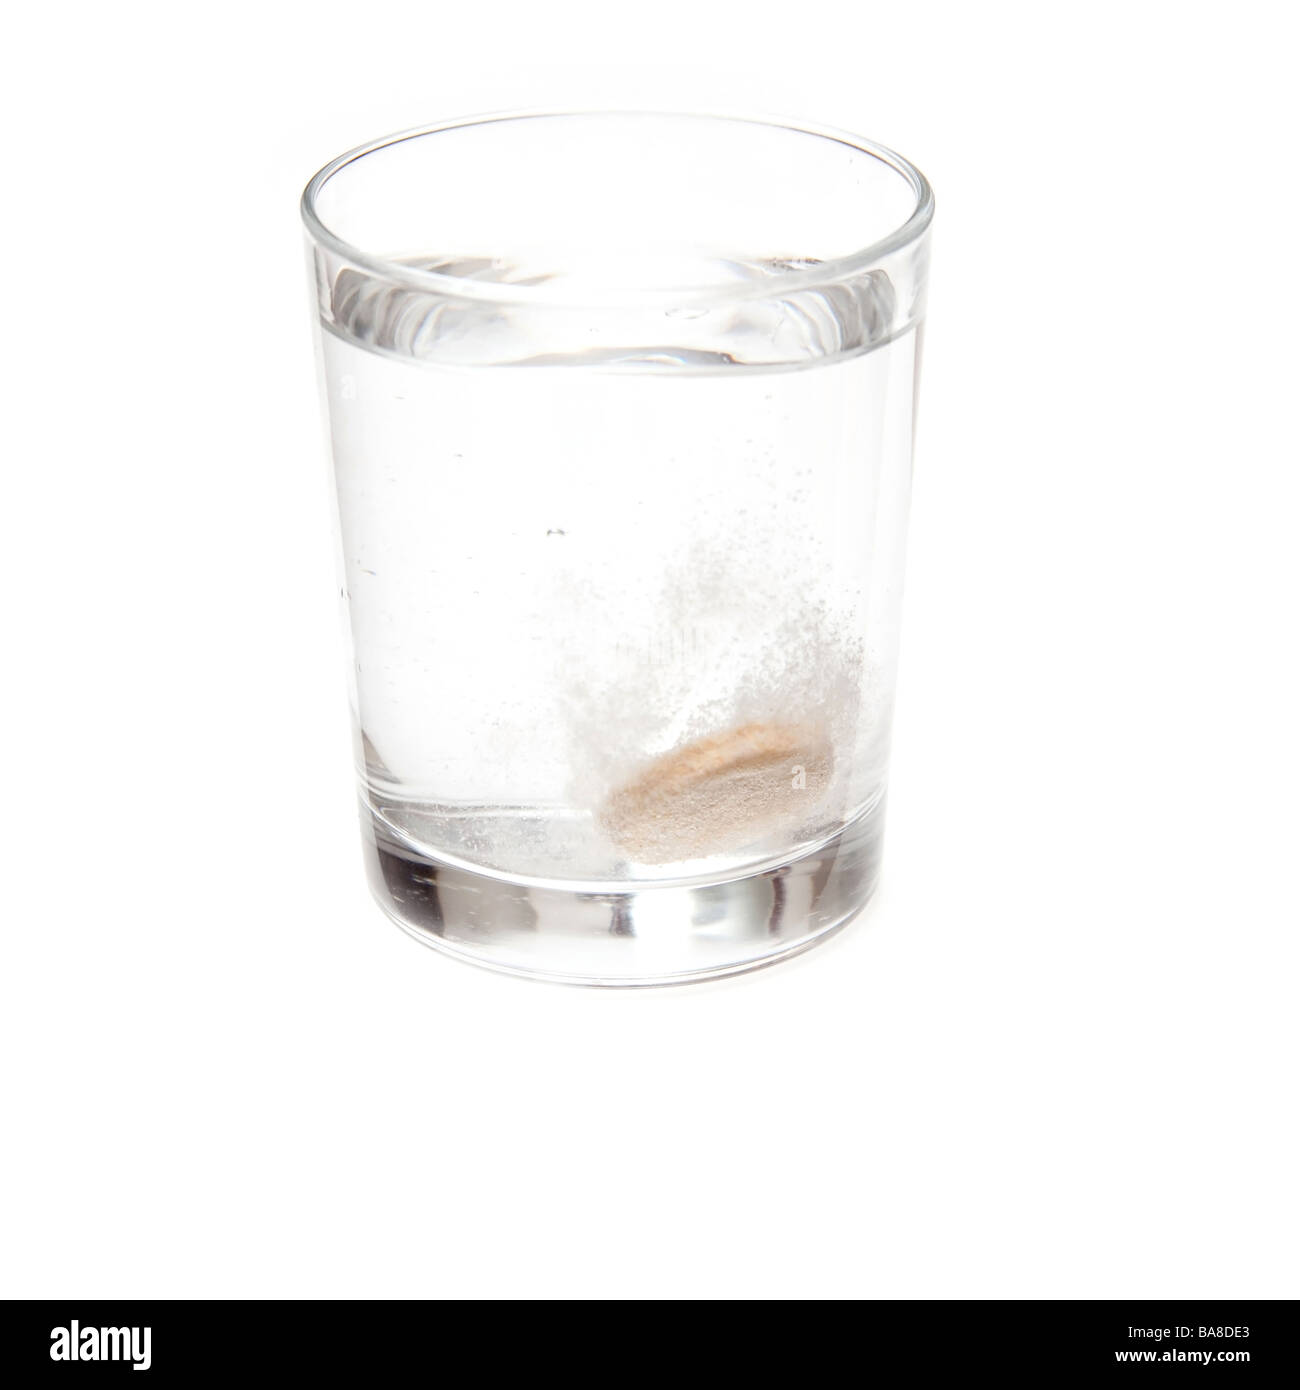 Disolución de tabletas de vitamina C efervescente en un vaso de agua. Aislado en un fondo blanco studio. Foto de stock